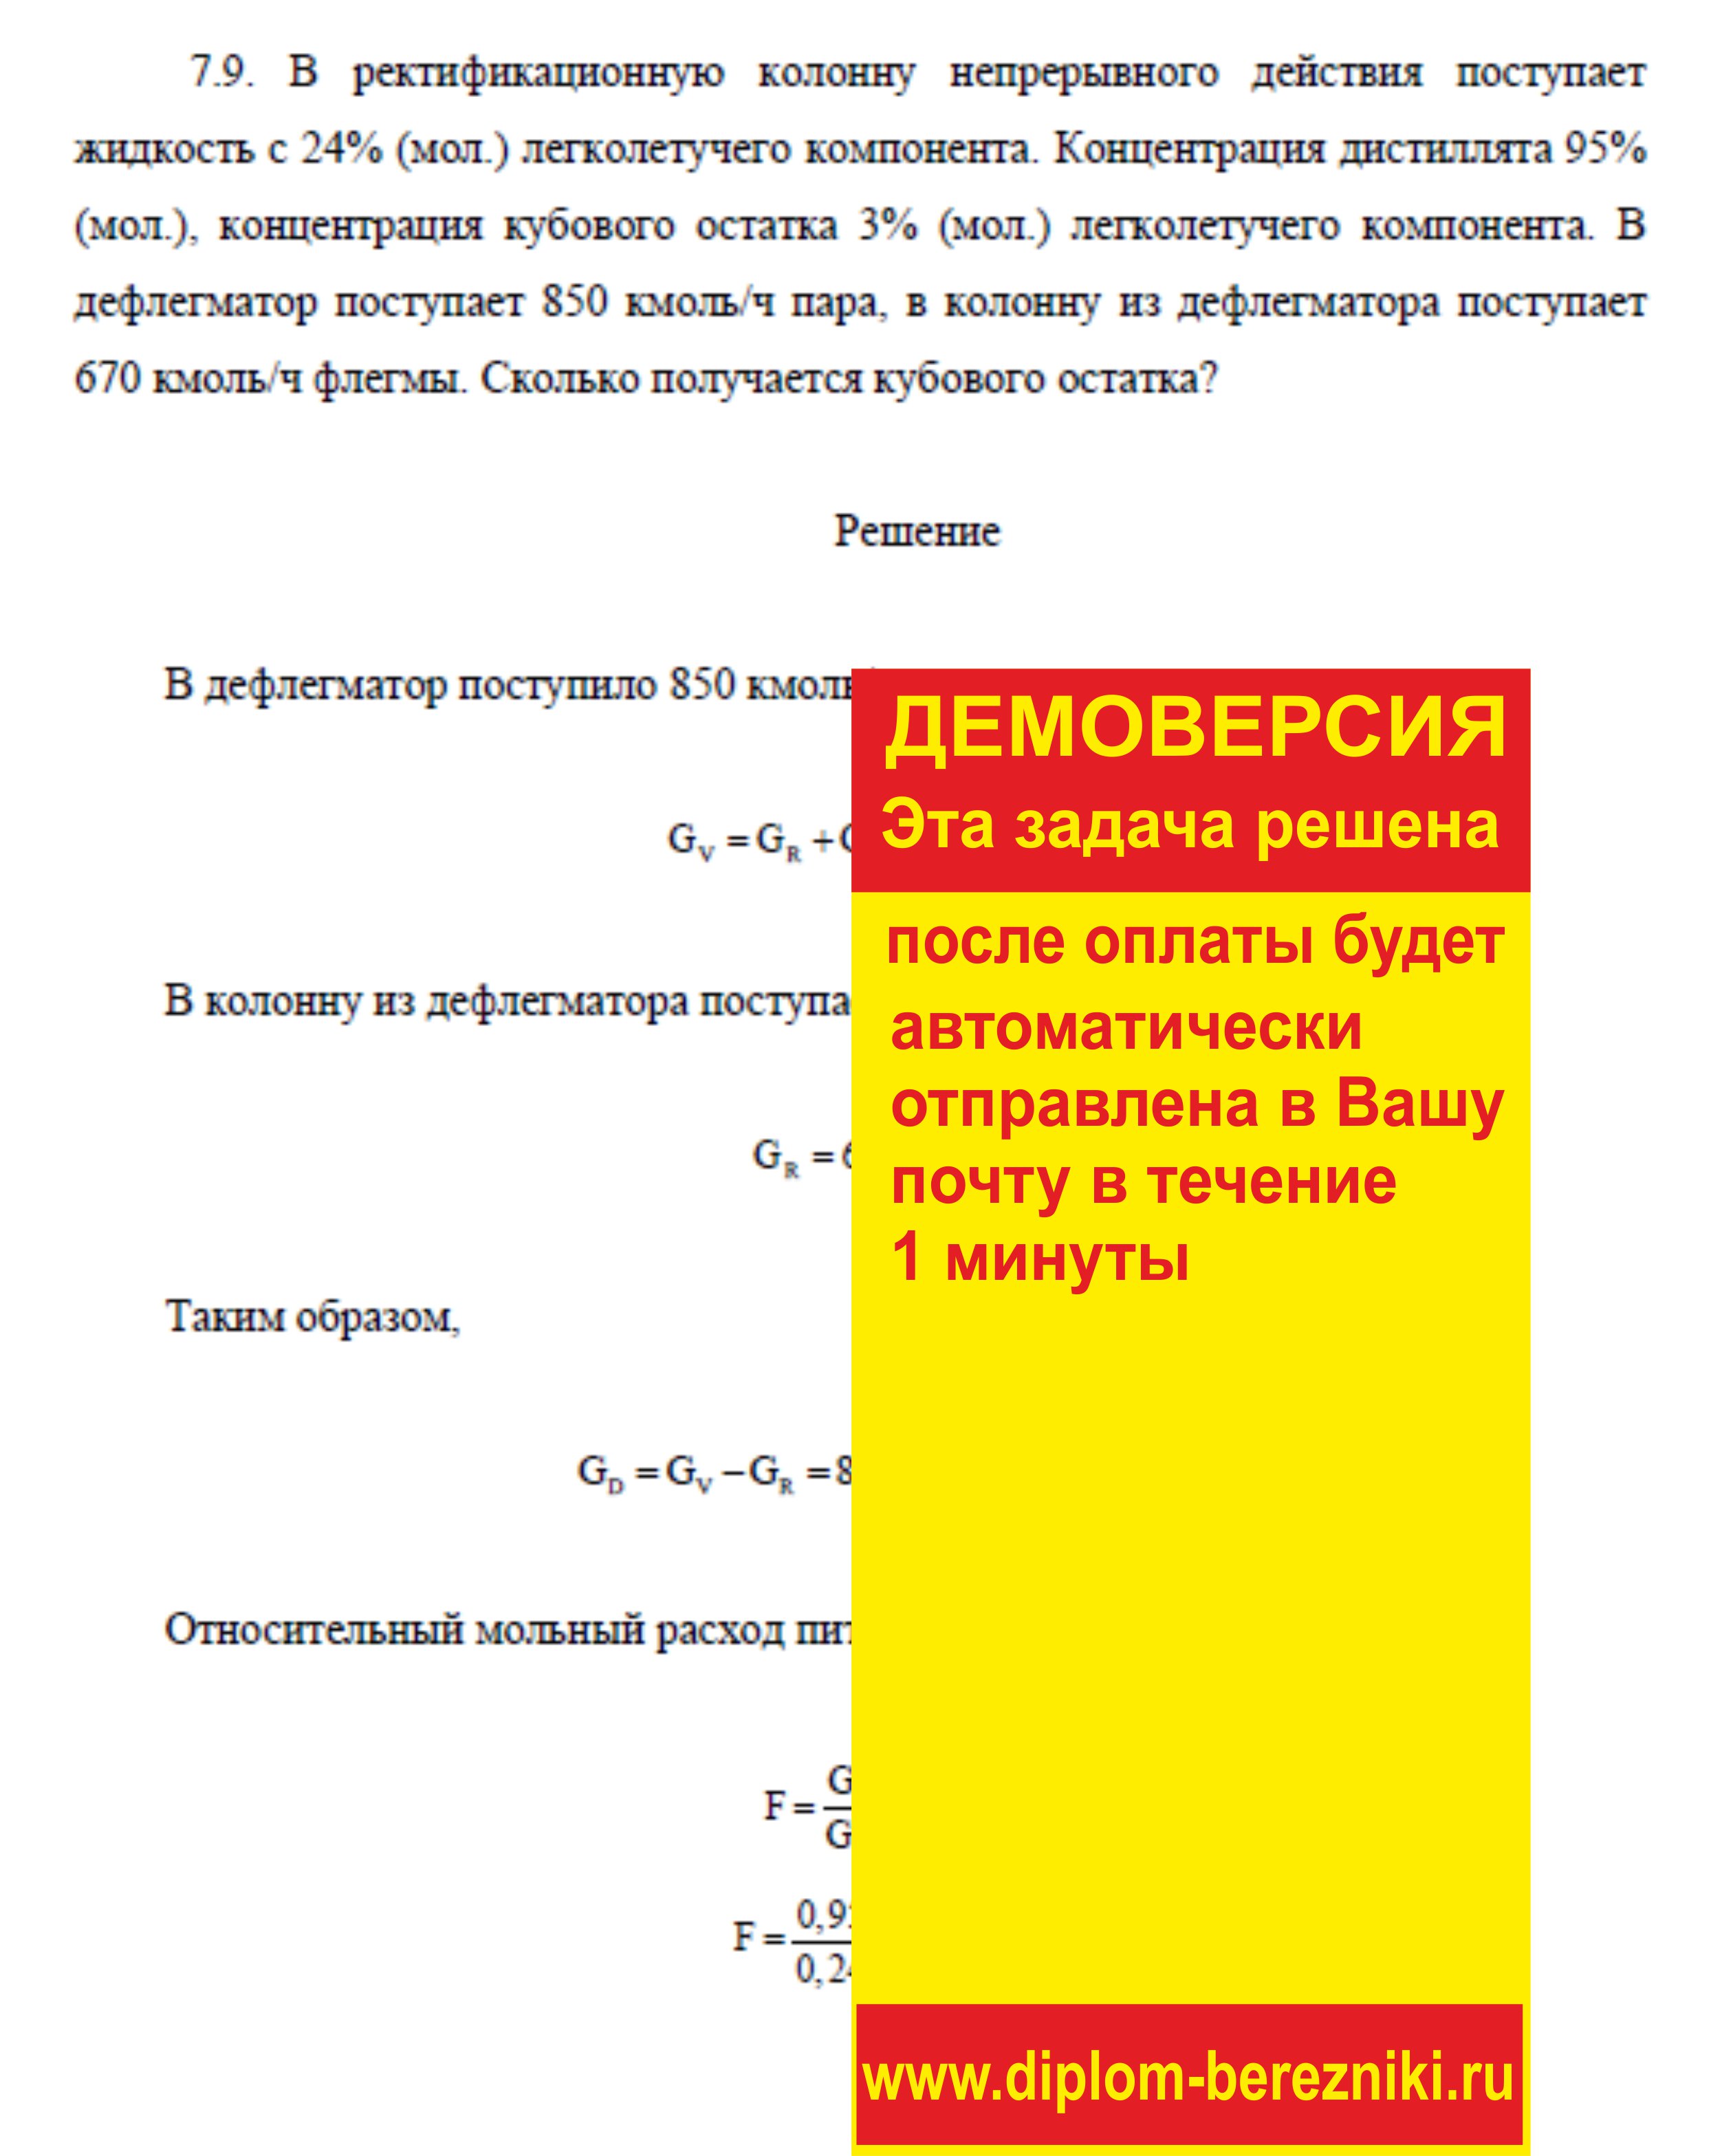 Решение задачи 7.9 по ПАХТ из задачника Павлова Романкова Носкова